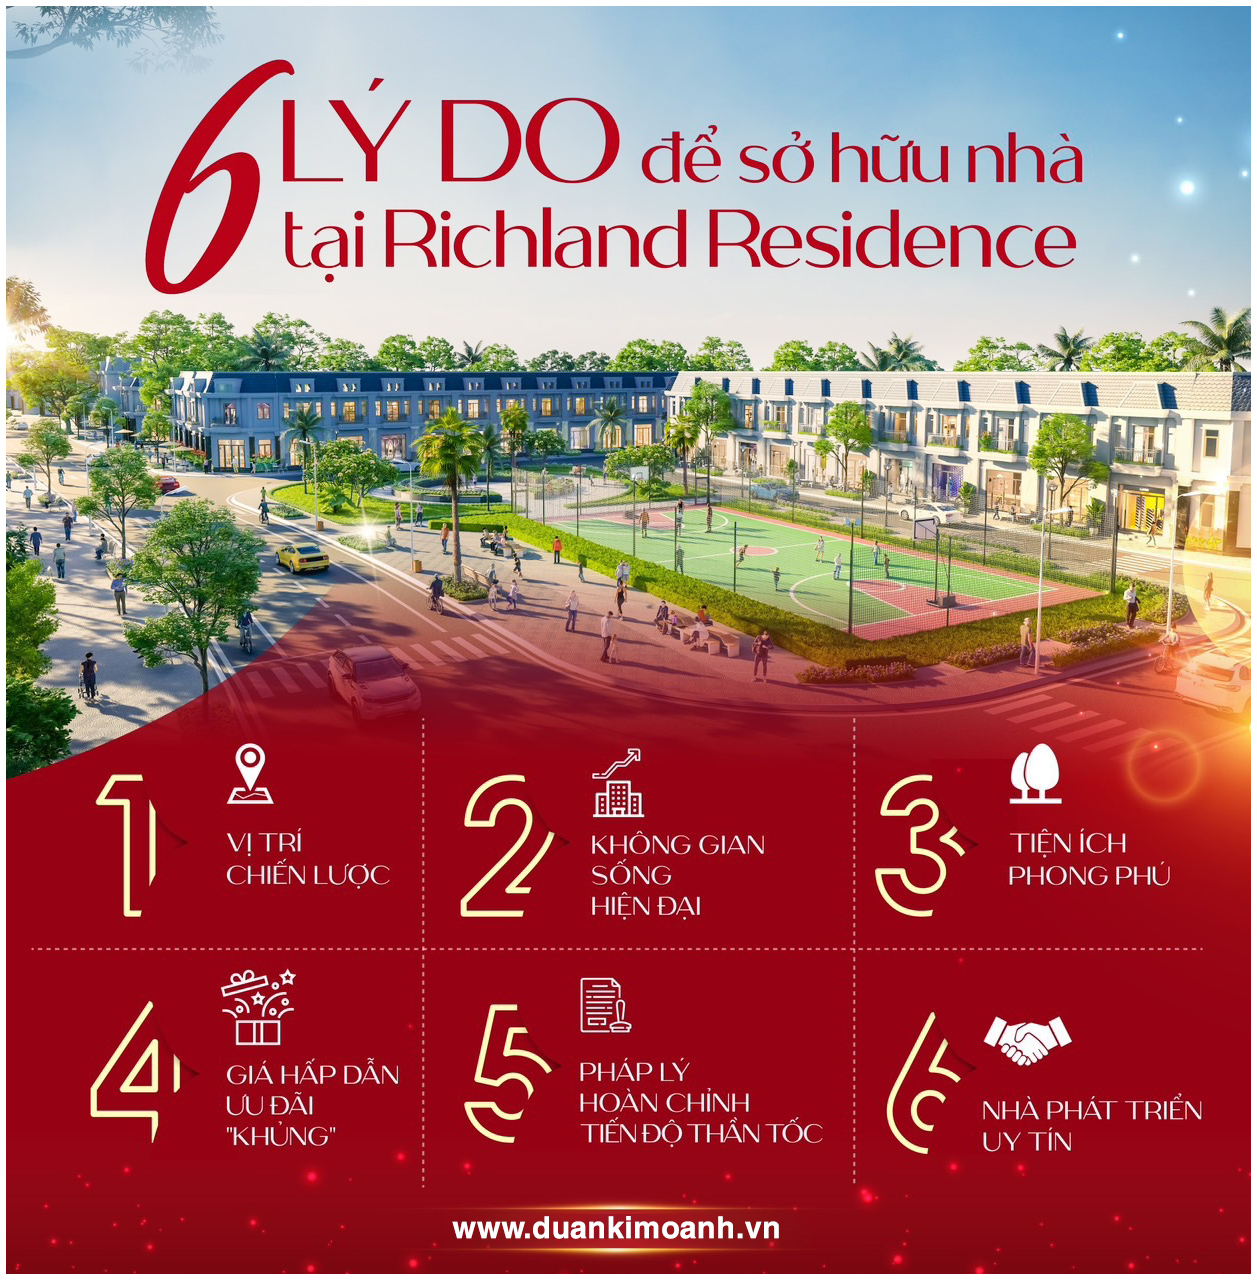 6 lý do để sở hữu nhà tại Richland Residence